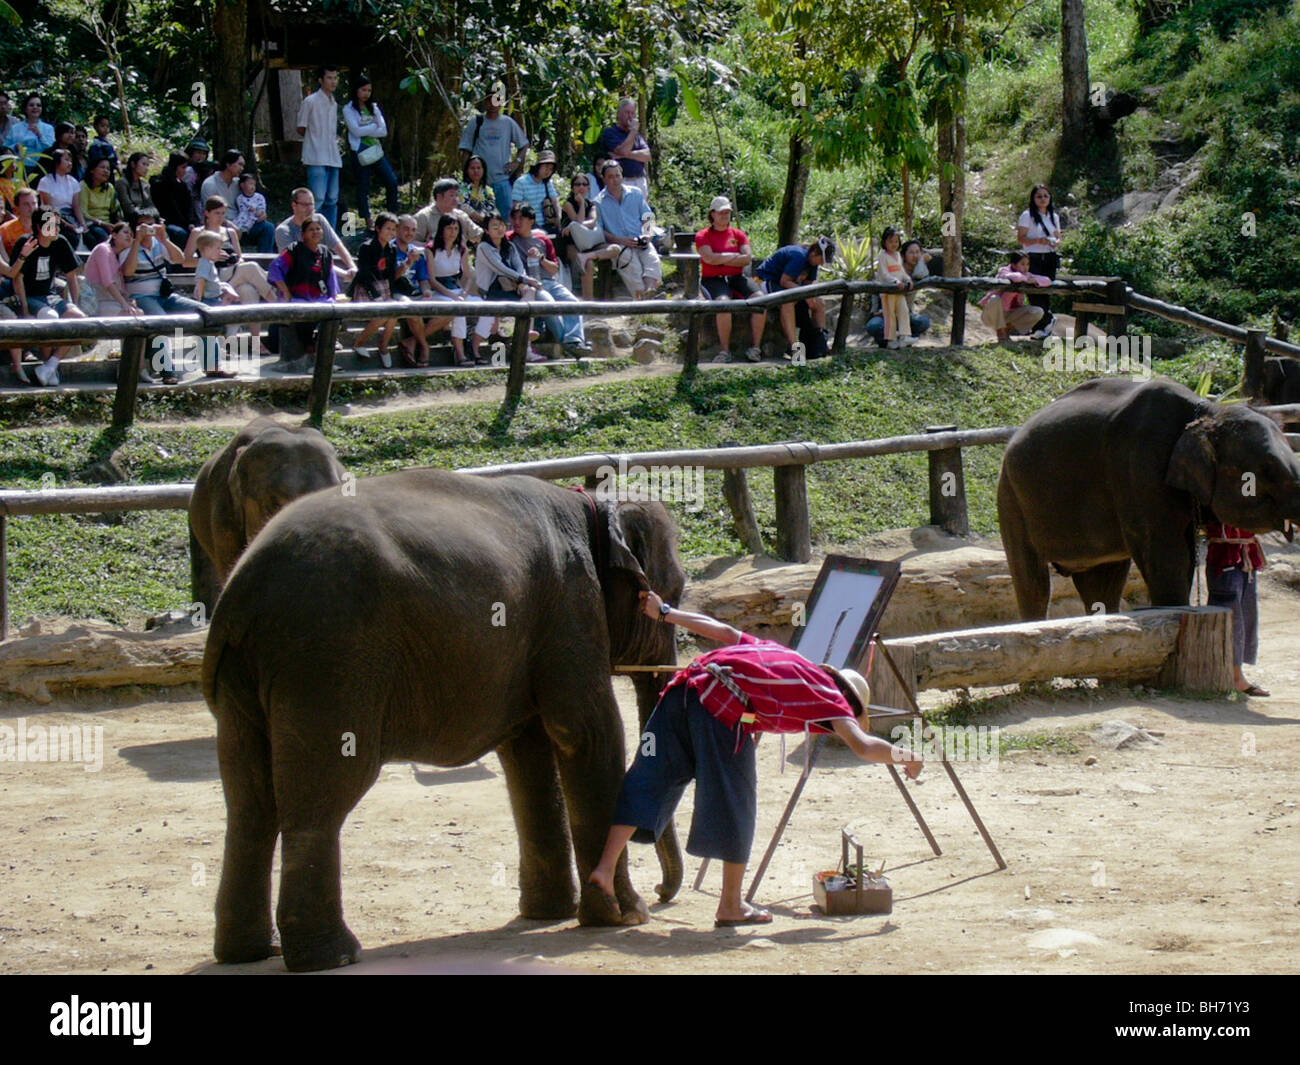 Spiaggia, Thailandia, la folla di turisti a guardare mostra di elefanti addestrati dipinto su tele Foto Stock